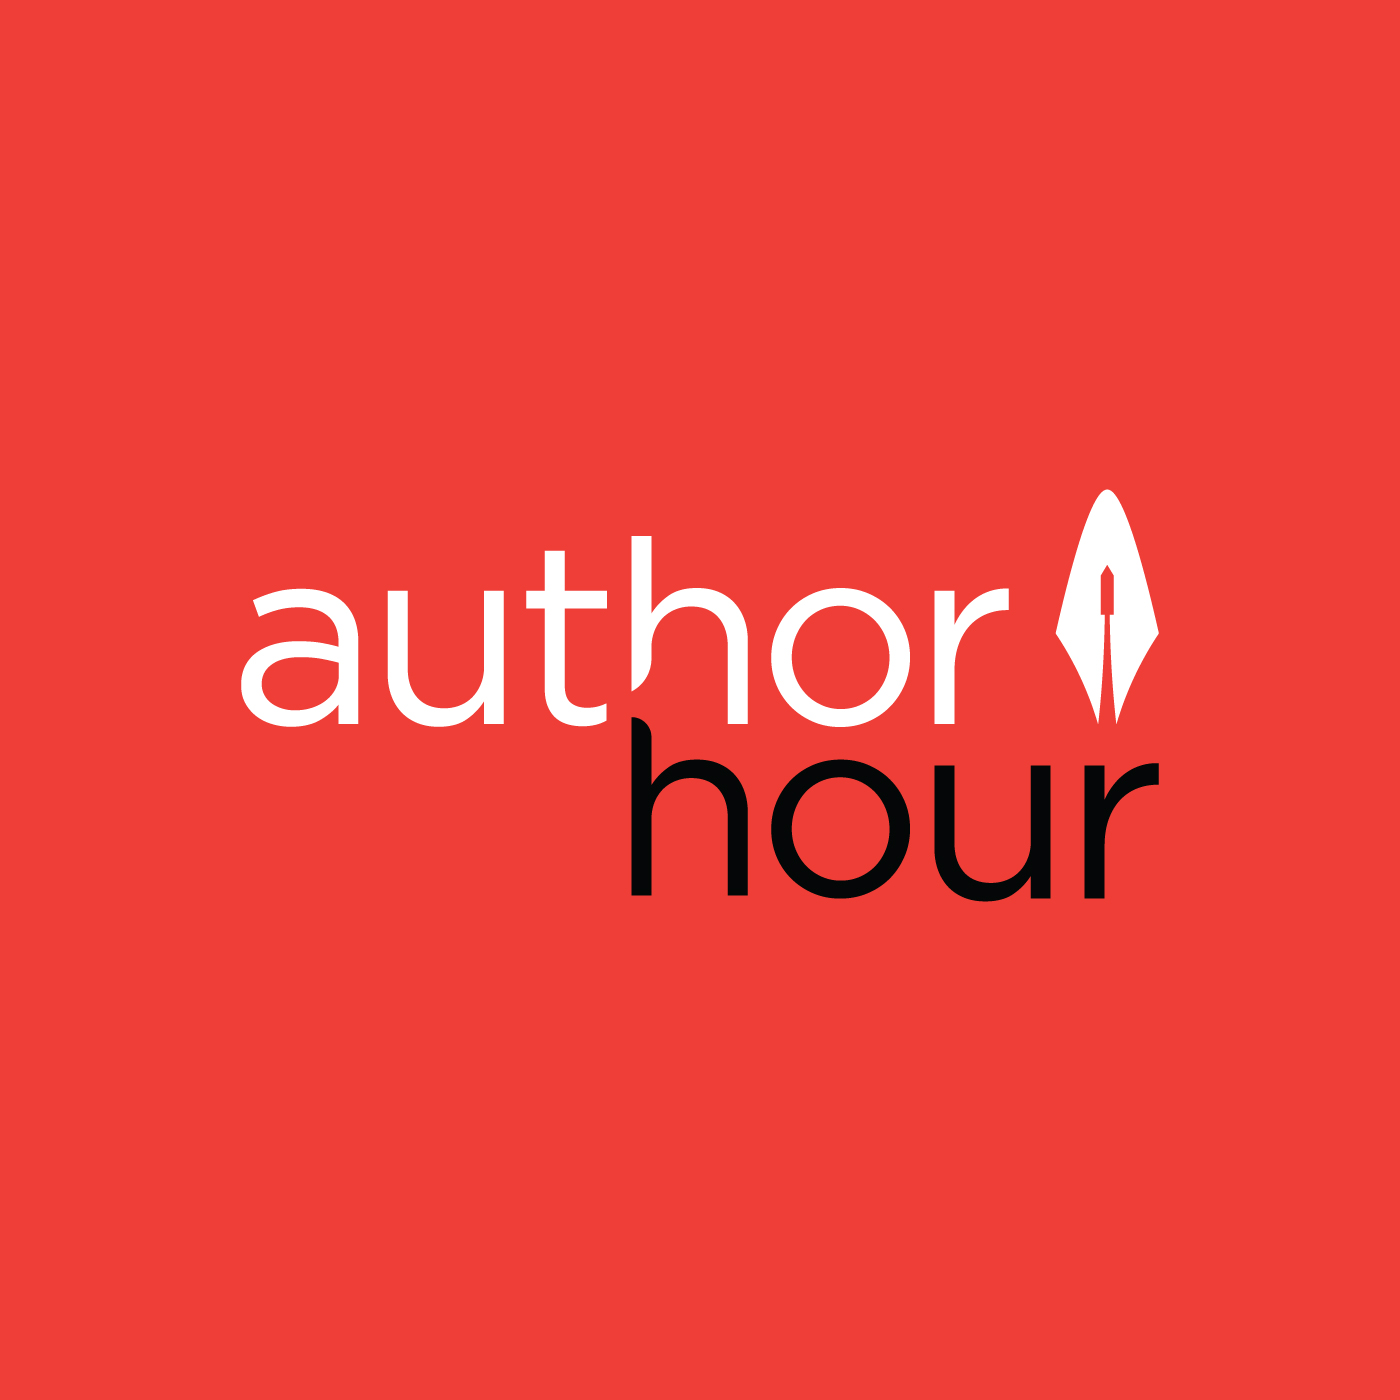 Author Hour